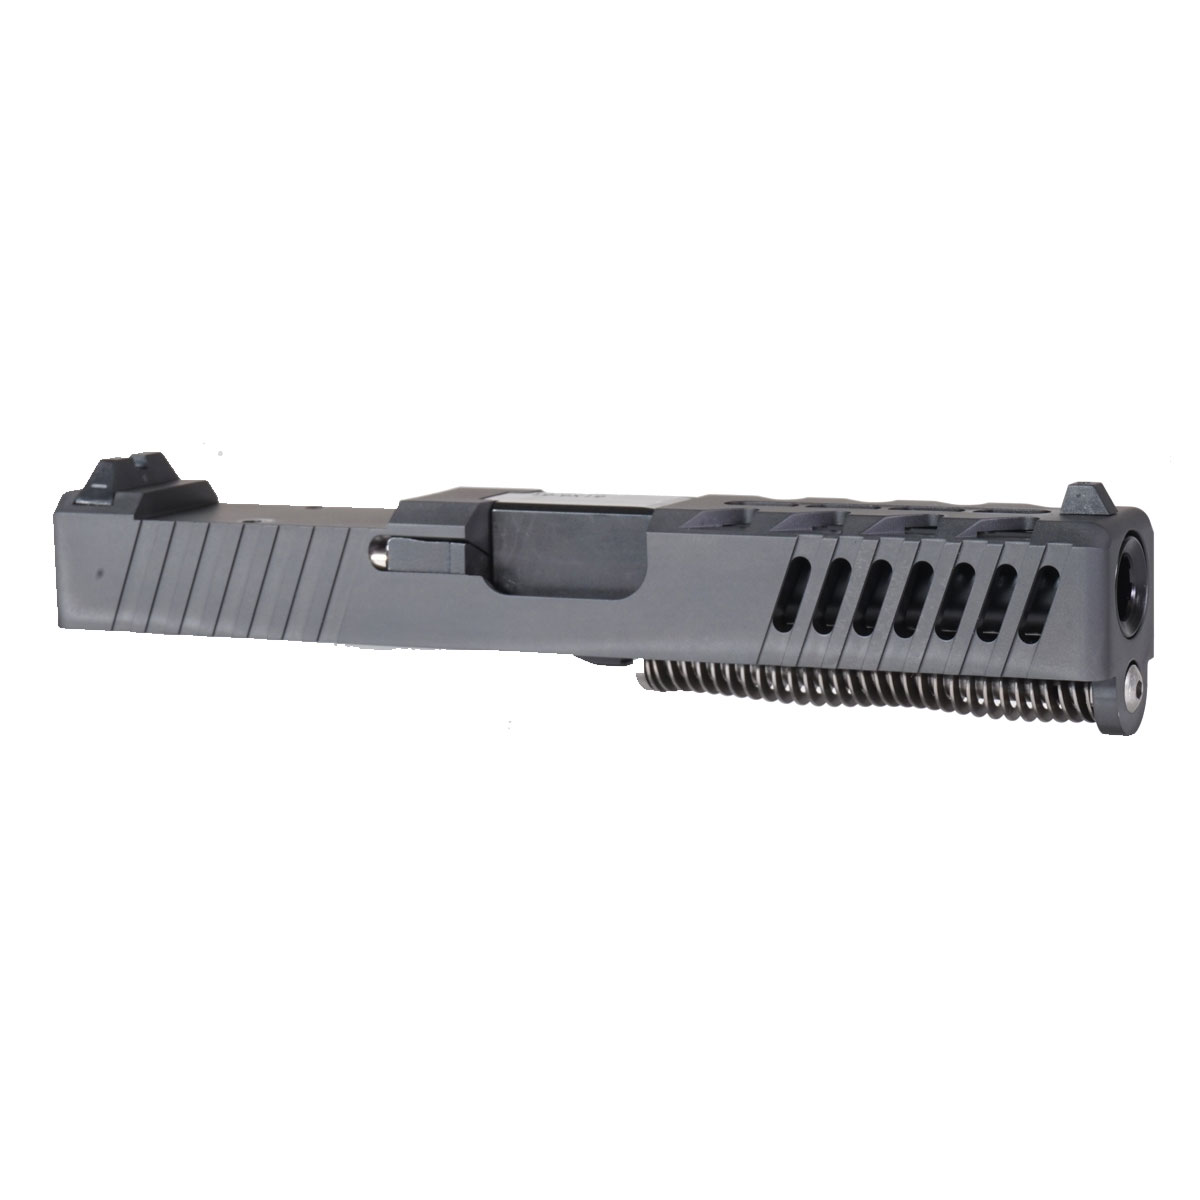 DDS 'The Rasmussen' 9mm Complete Slide Kit - Glock 19 Gen 1-3 Compatible